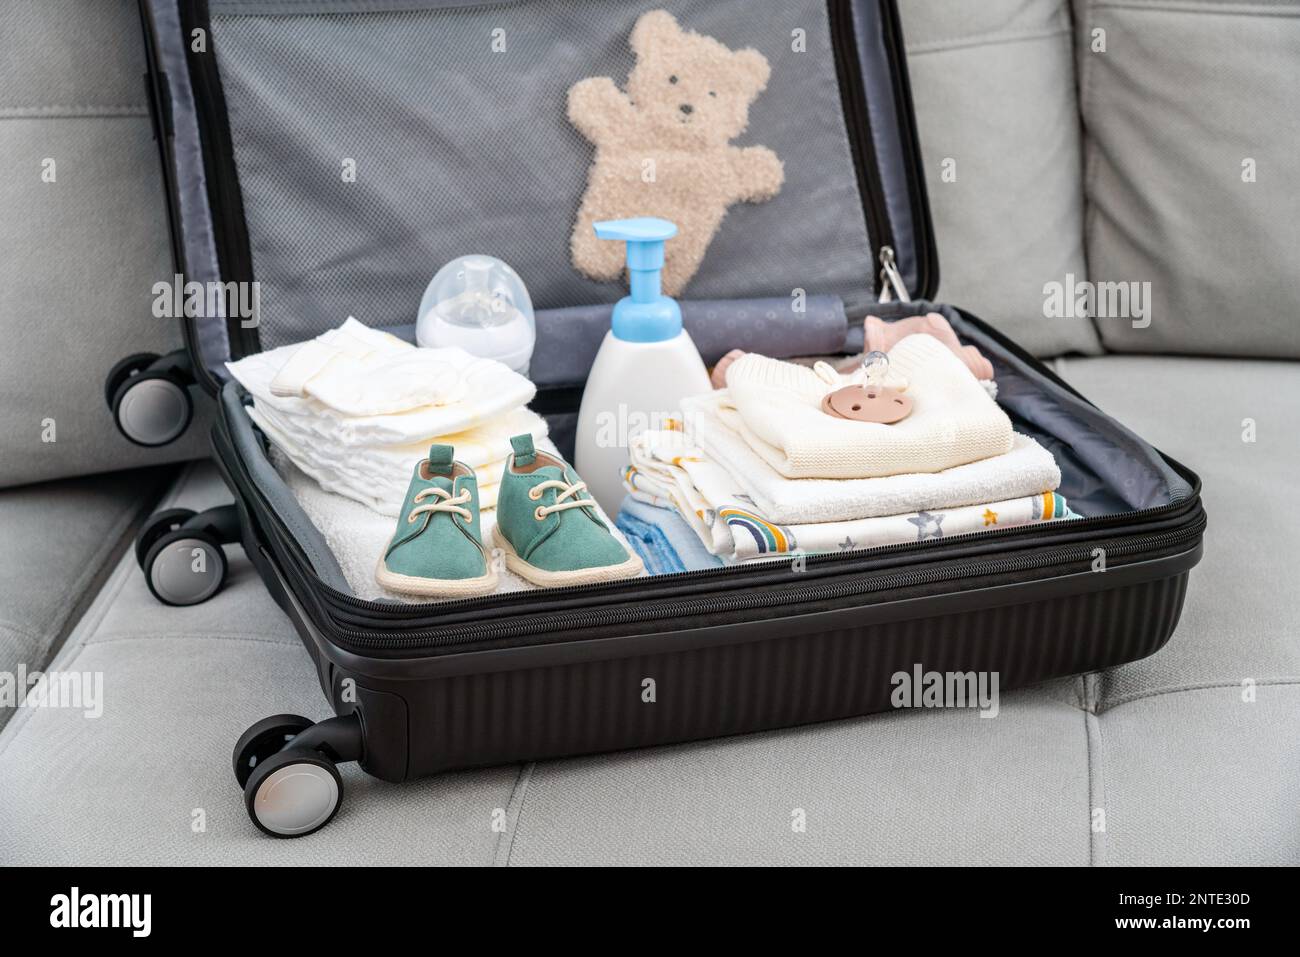 Cómo y cuándo preparar la bolsa del hospital para el bebé? – Baby Voltereta